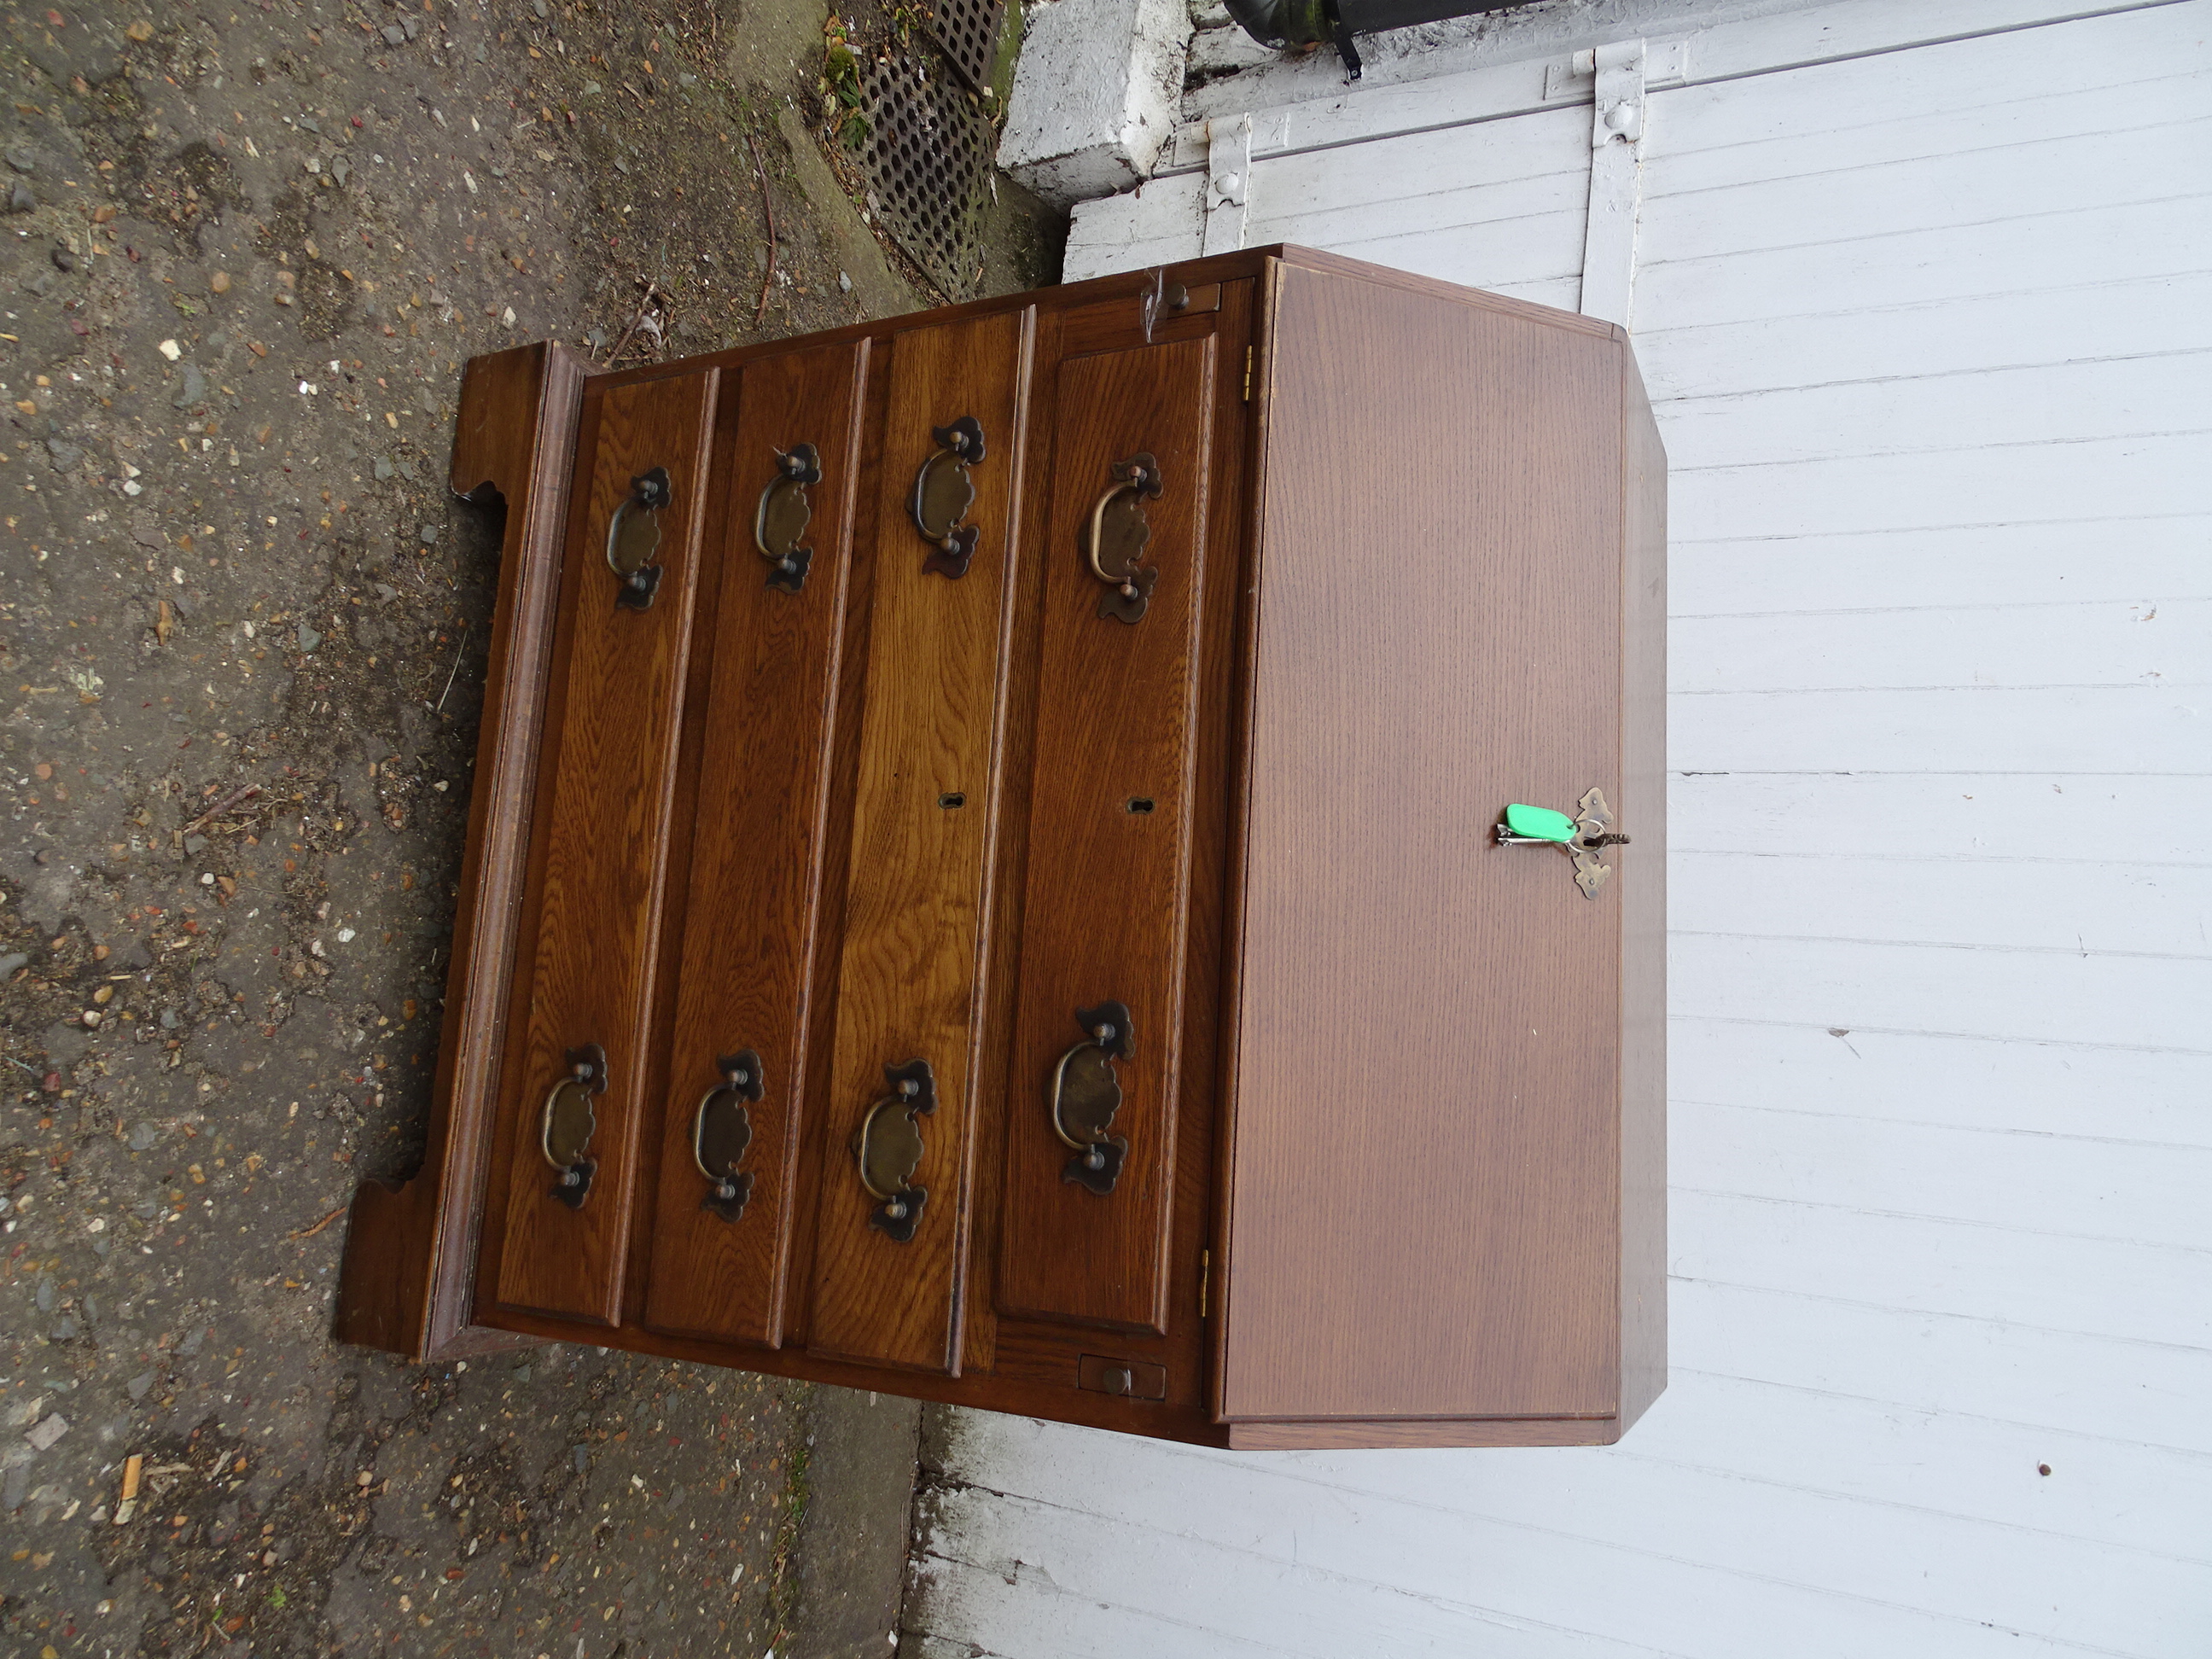 Oak 4 drawer bureau with key